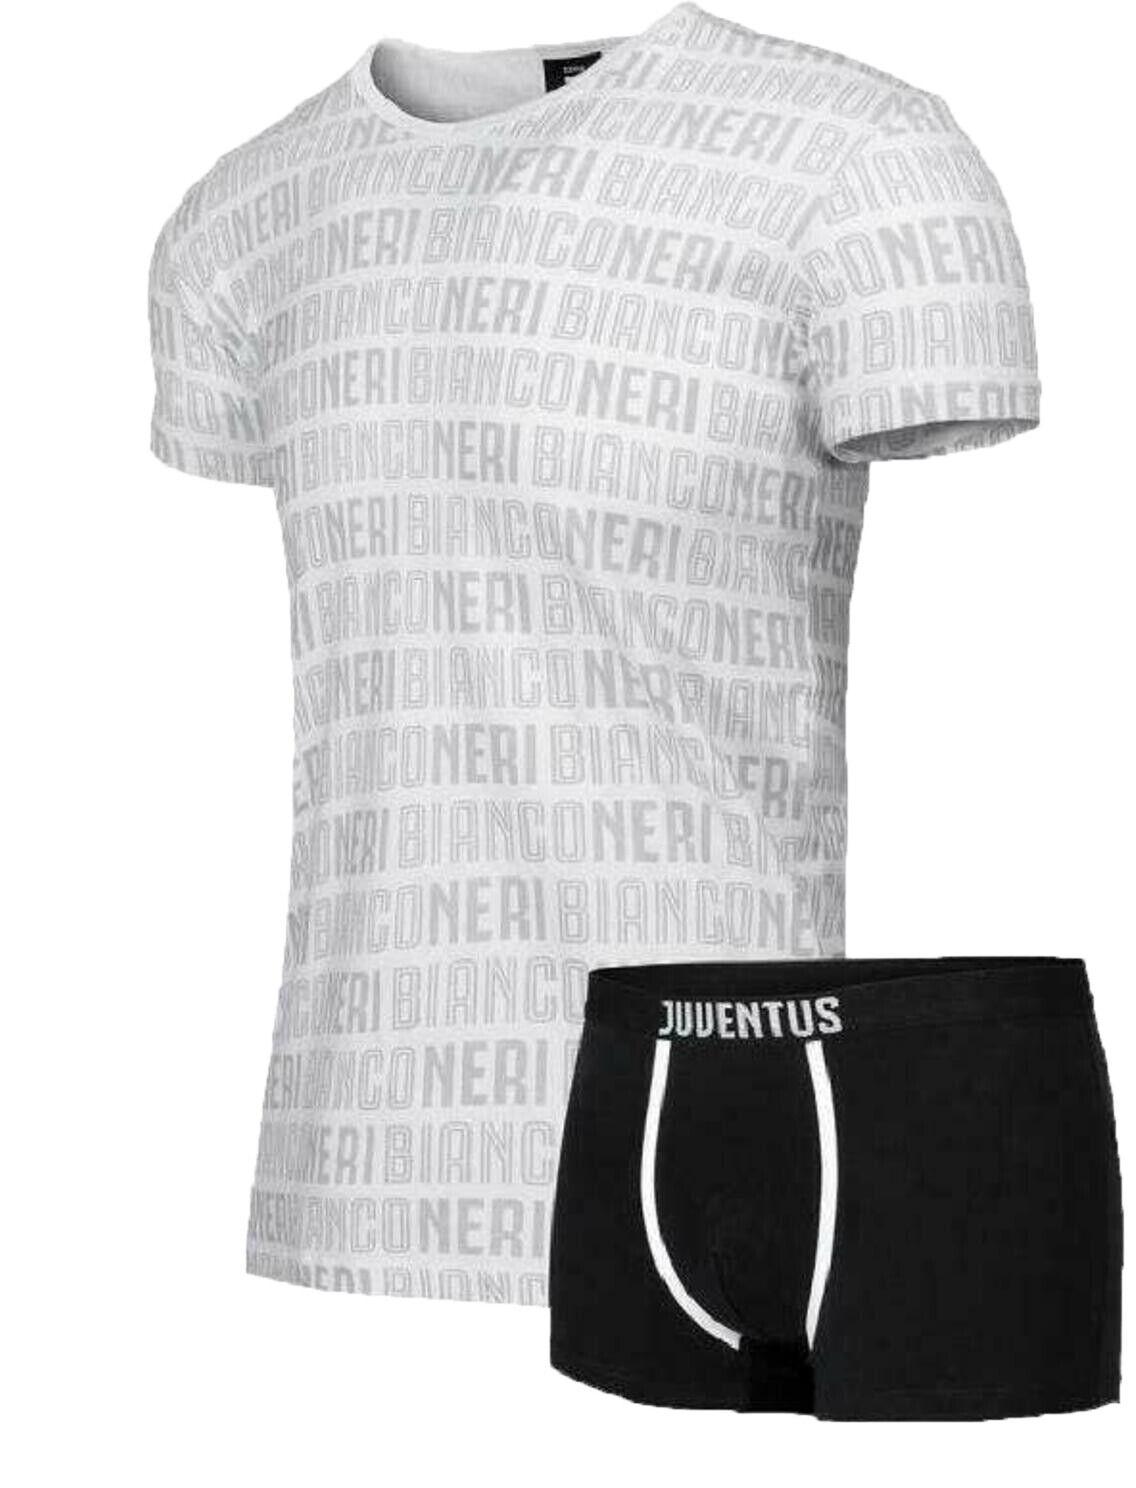 Completo intimo t-shirt + boxer junior Compatibile con Juventus